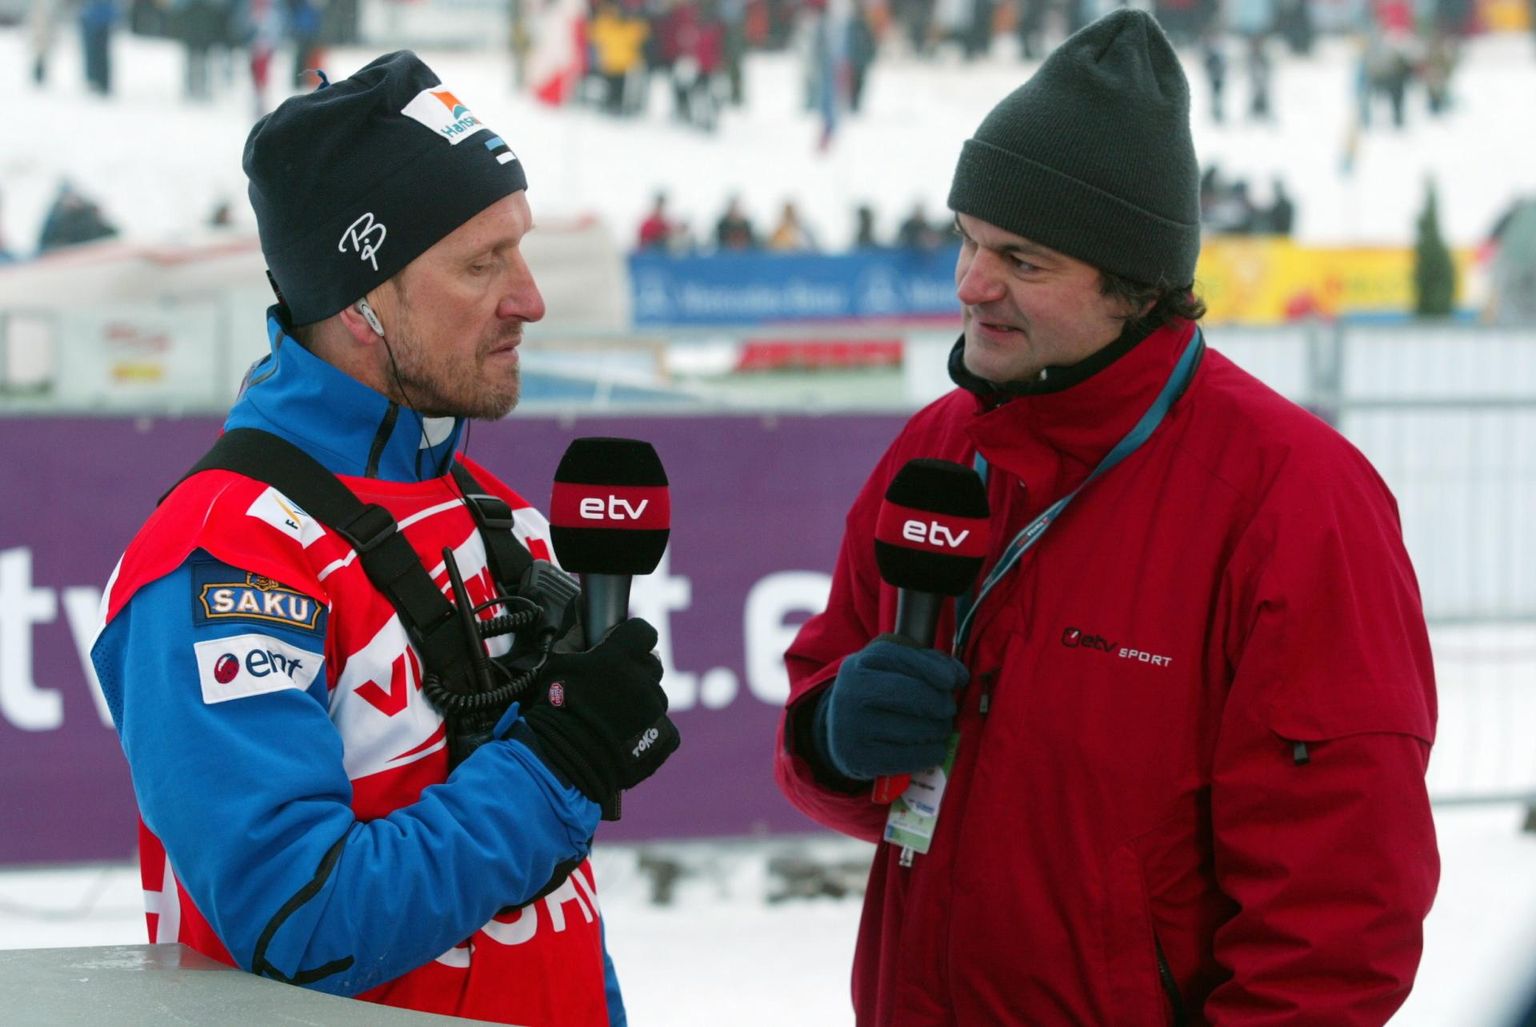 Tollal ERRi heaks töötanud Marko Kaljuveer (paremal) usutlemas 2006. aasta Otepää MK-etapil Tehvandi staadionil pärast meeste 15 km klassikasõitu Eesti suusakoondise peatreenerit Mati Alaveri.